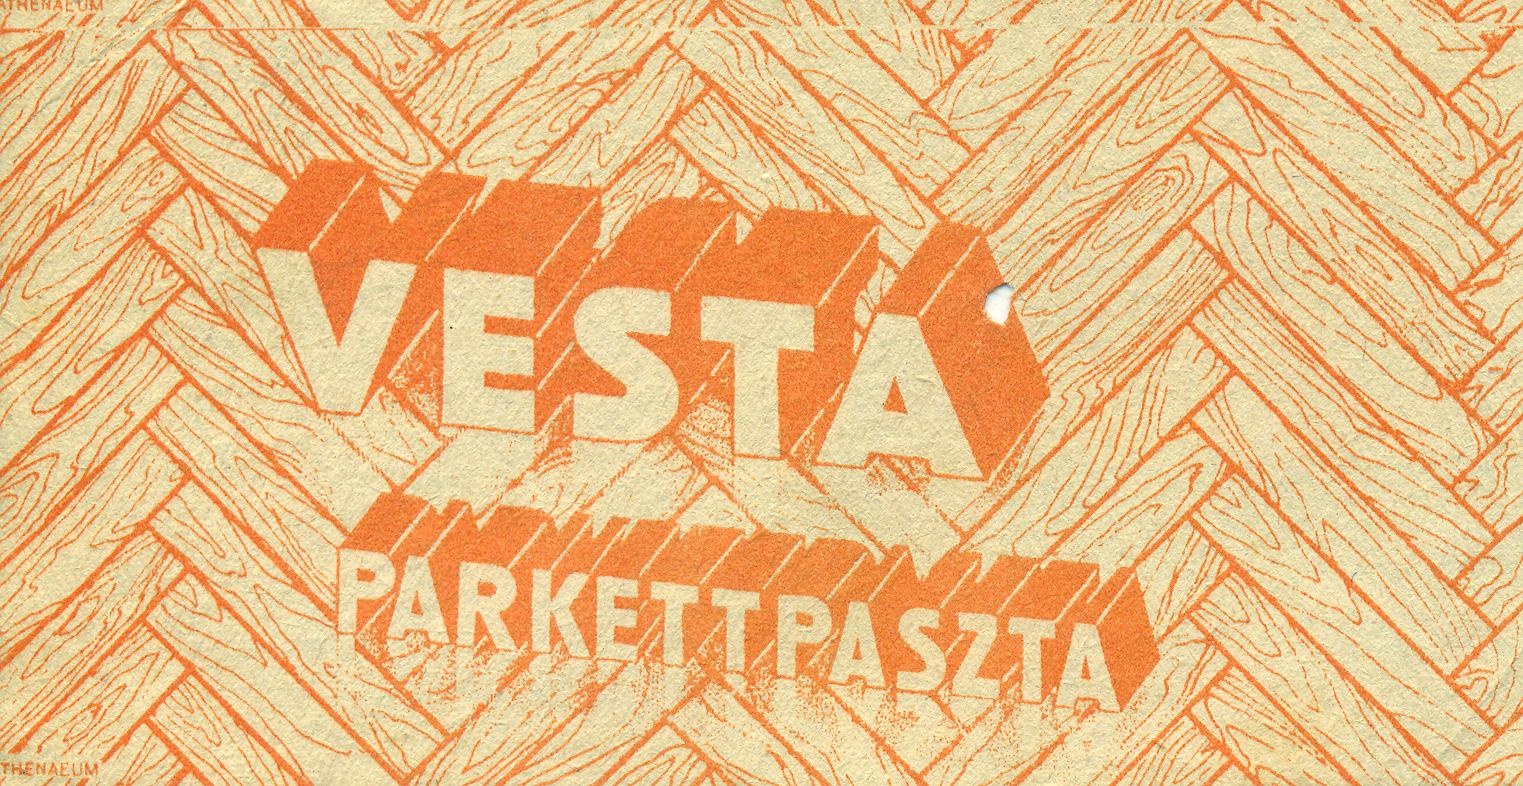 Vesta parkettapaszta (Magyar Kereskedelmi és Vendéglátóipari Múzeum CC BY-NC-SA)